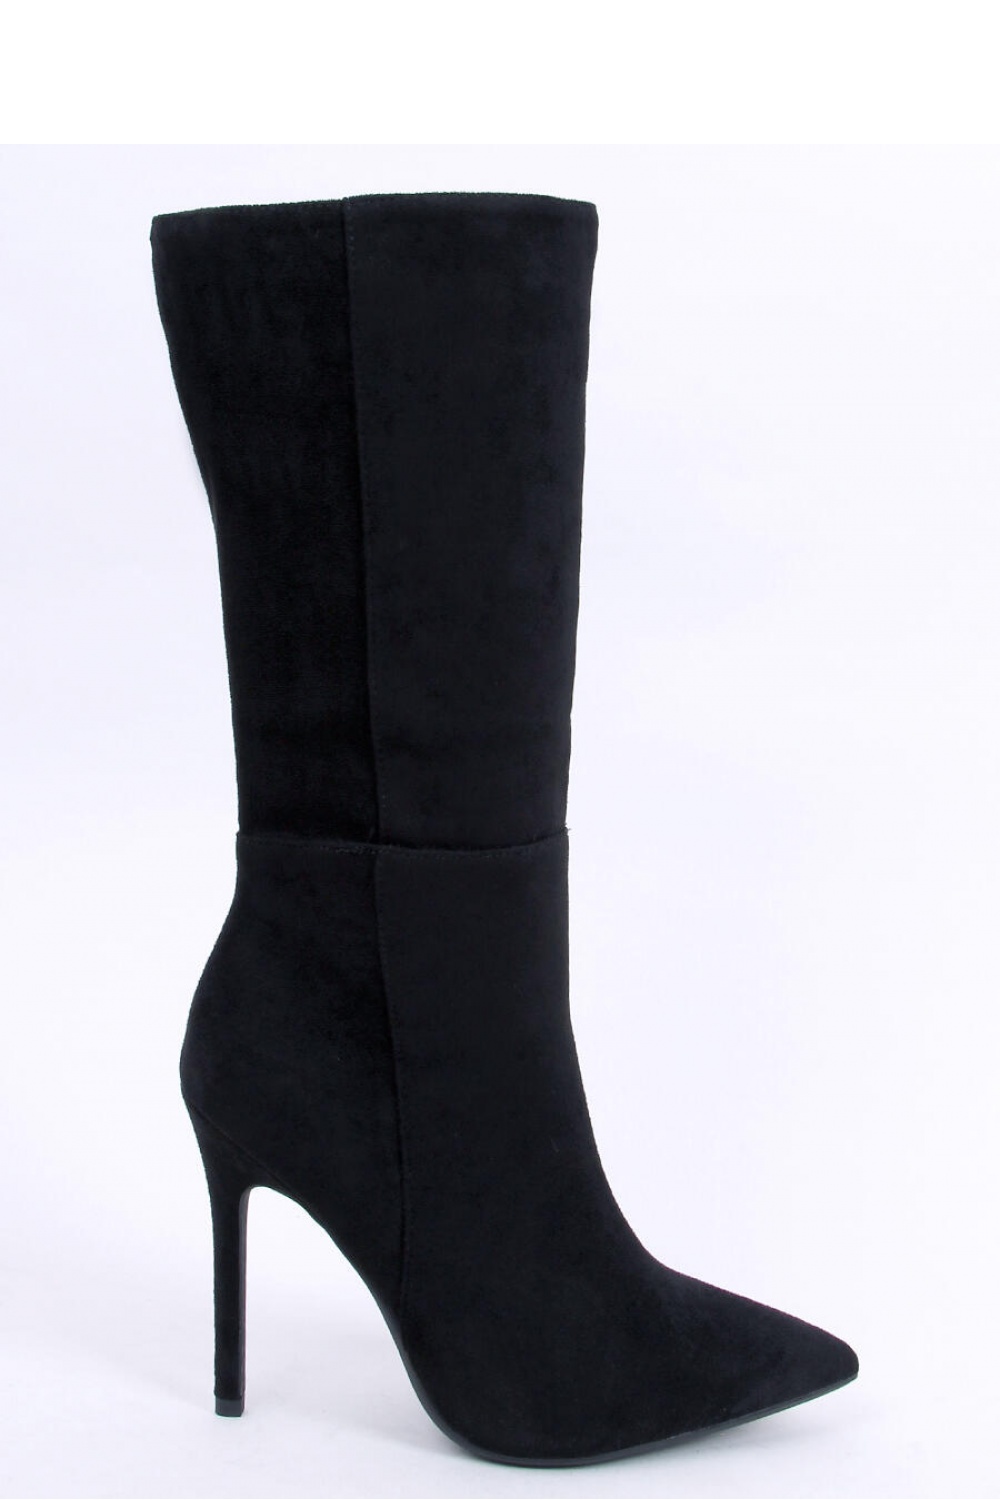 Stiefel mit Absätzen model 174525 Inello schwarz Damen